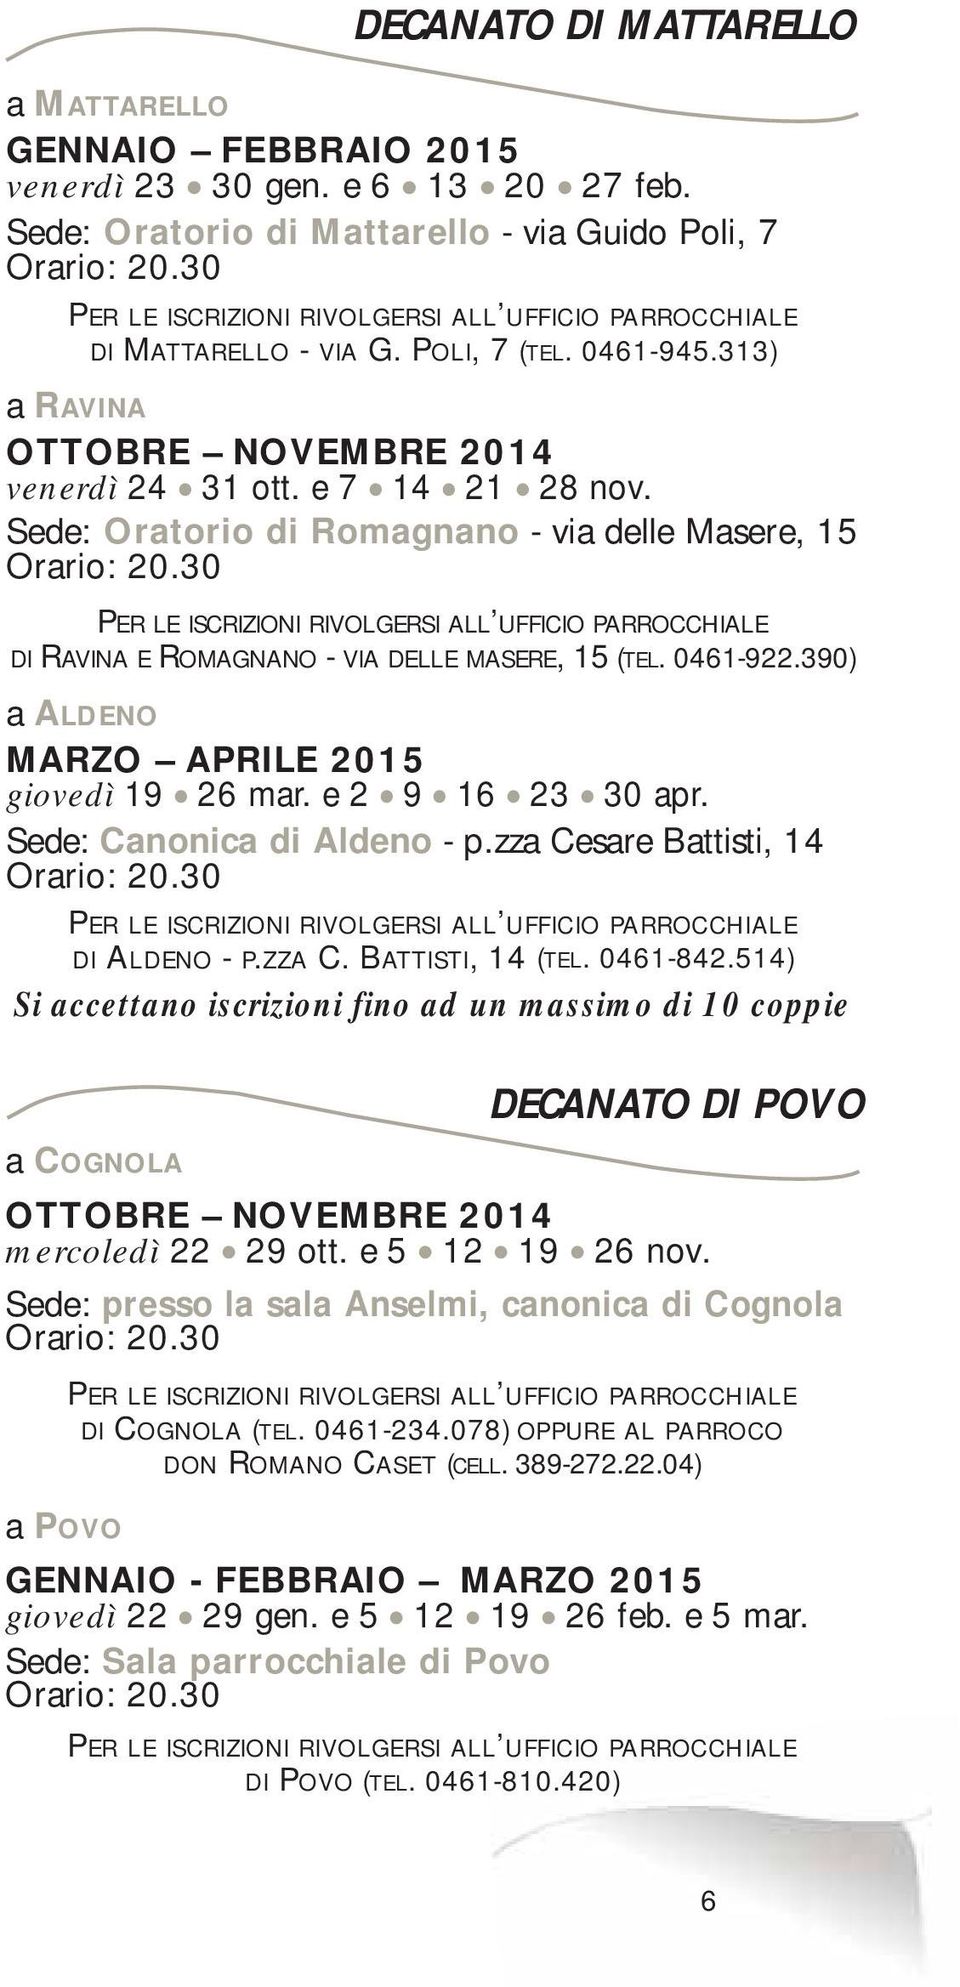 Sede: Oratorio di Romagnano - via delle Masere, 15 Orario: 20.30 PER LE ISCRIZIONI RIVOLGERSI ALL UFFICIO PARROCCHIALE DI RAVINA E ROMAGNANO - VIA DELLE MASERE, 15 (TEL. 0461-922.